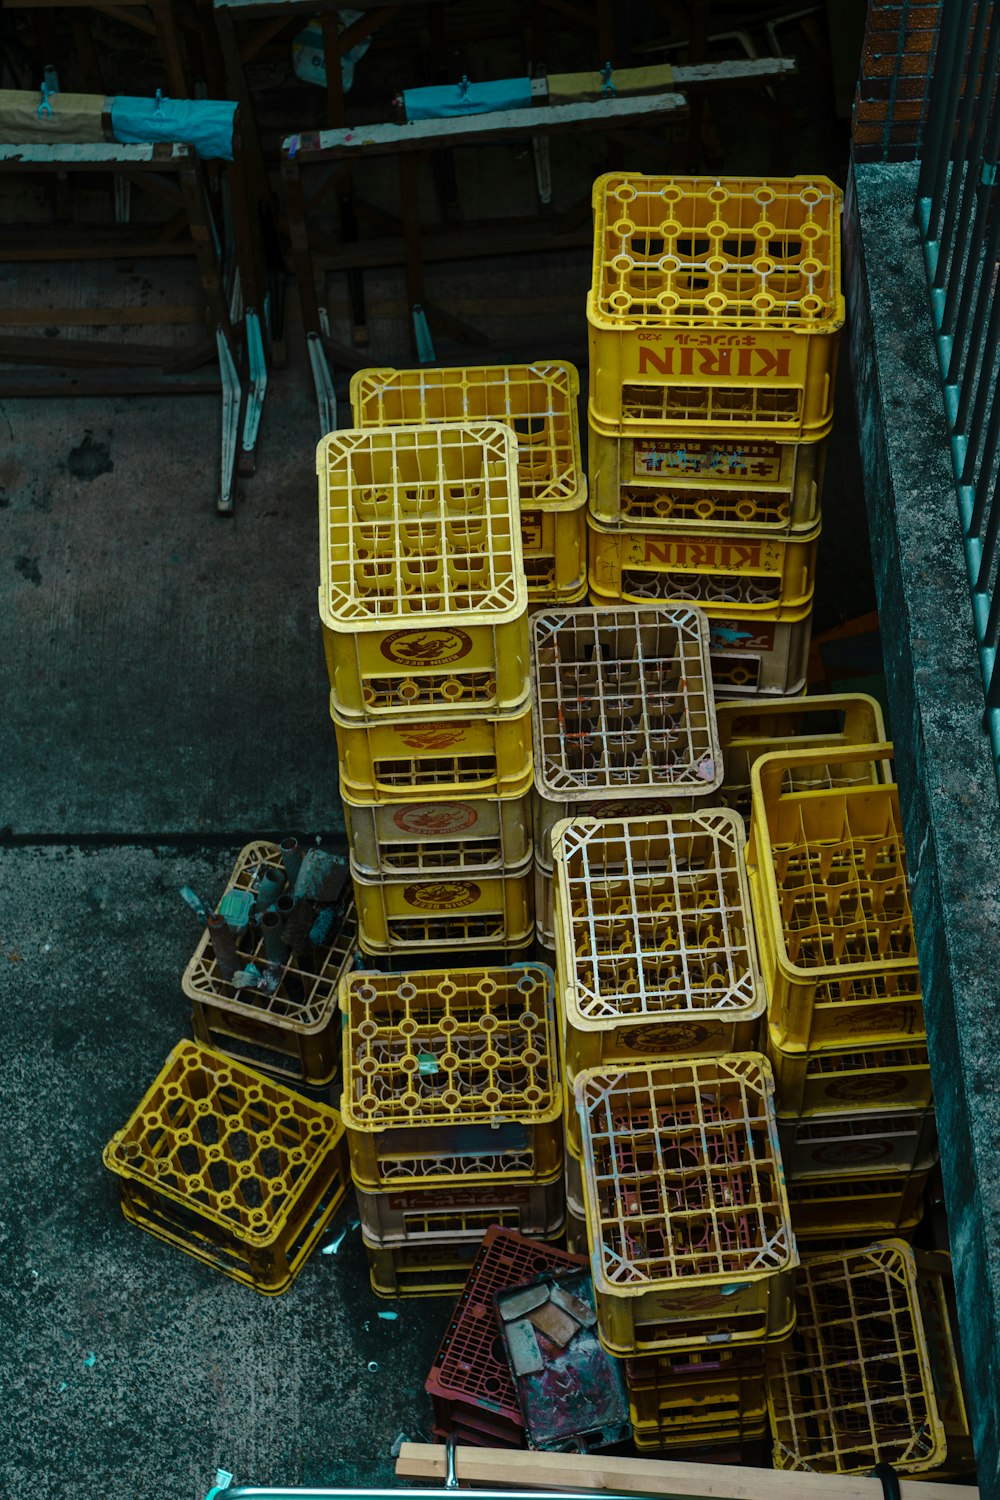 un tas de caisses jaunes posées sur le dessus d’un trottoir